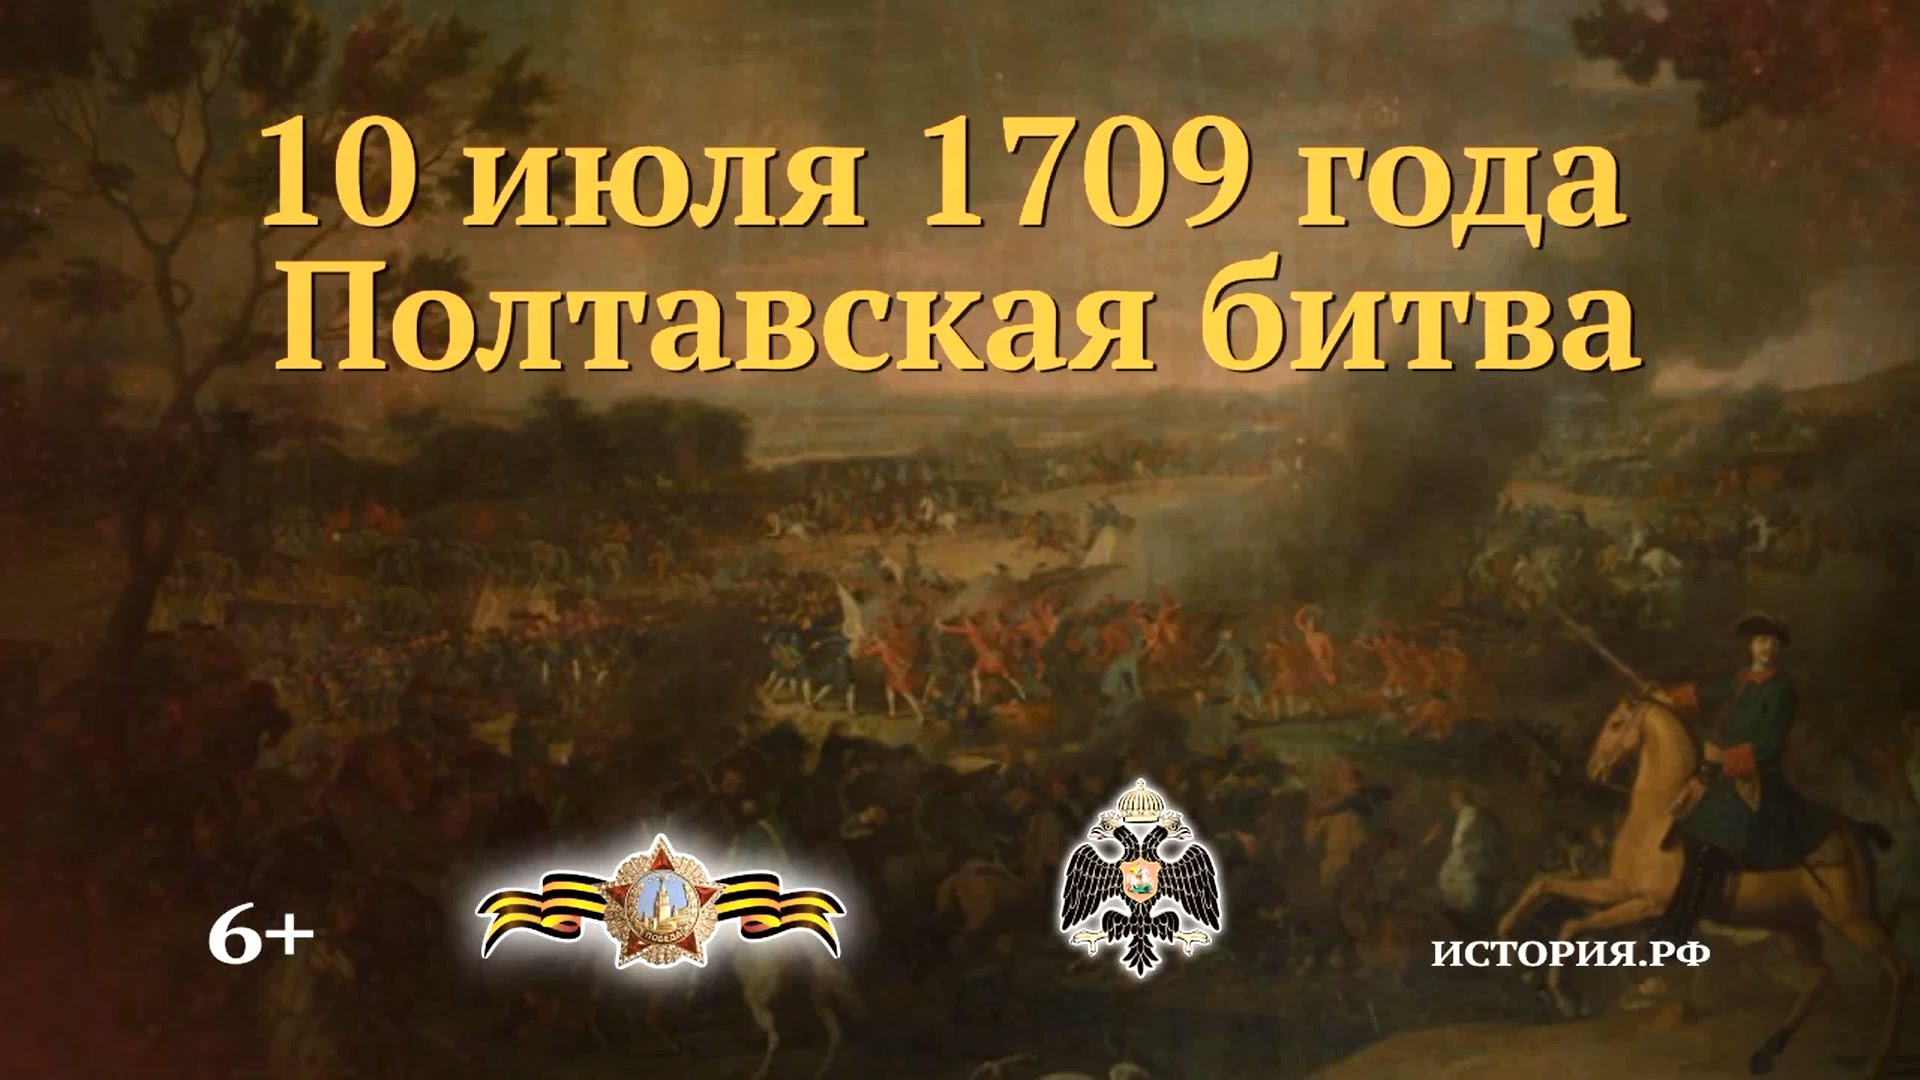 10 июля - день воинской славы России.